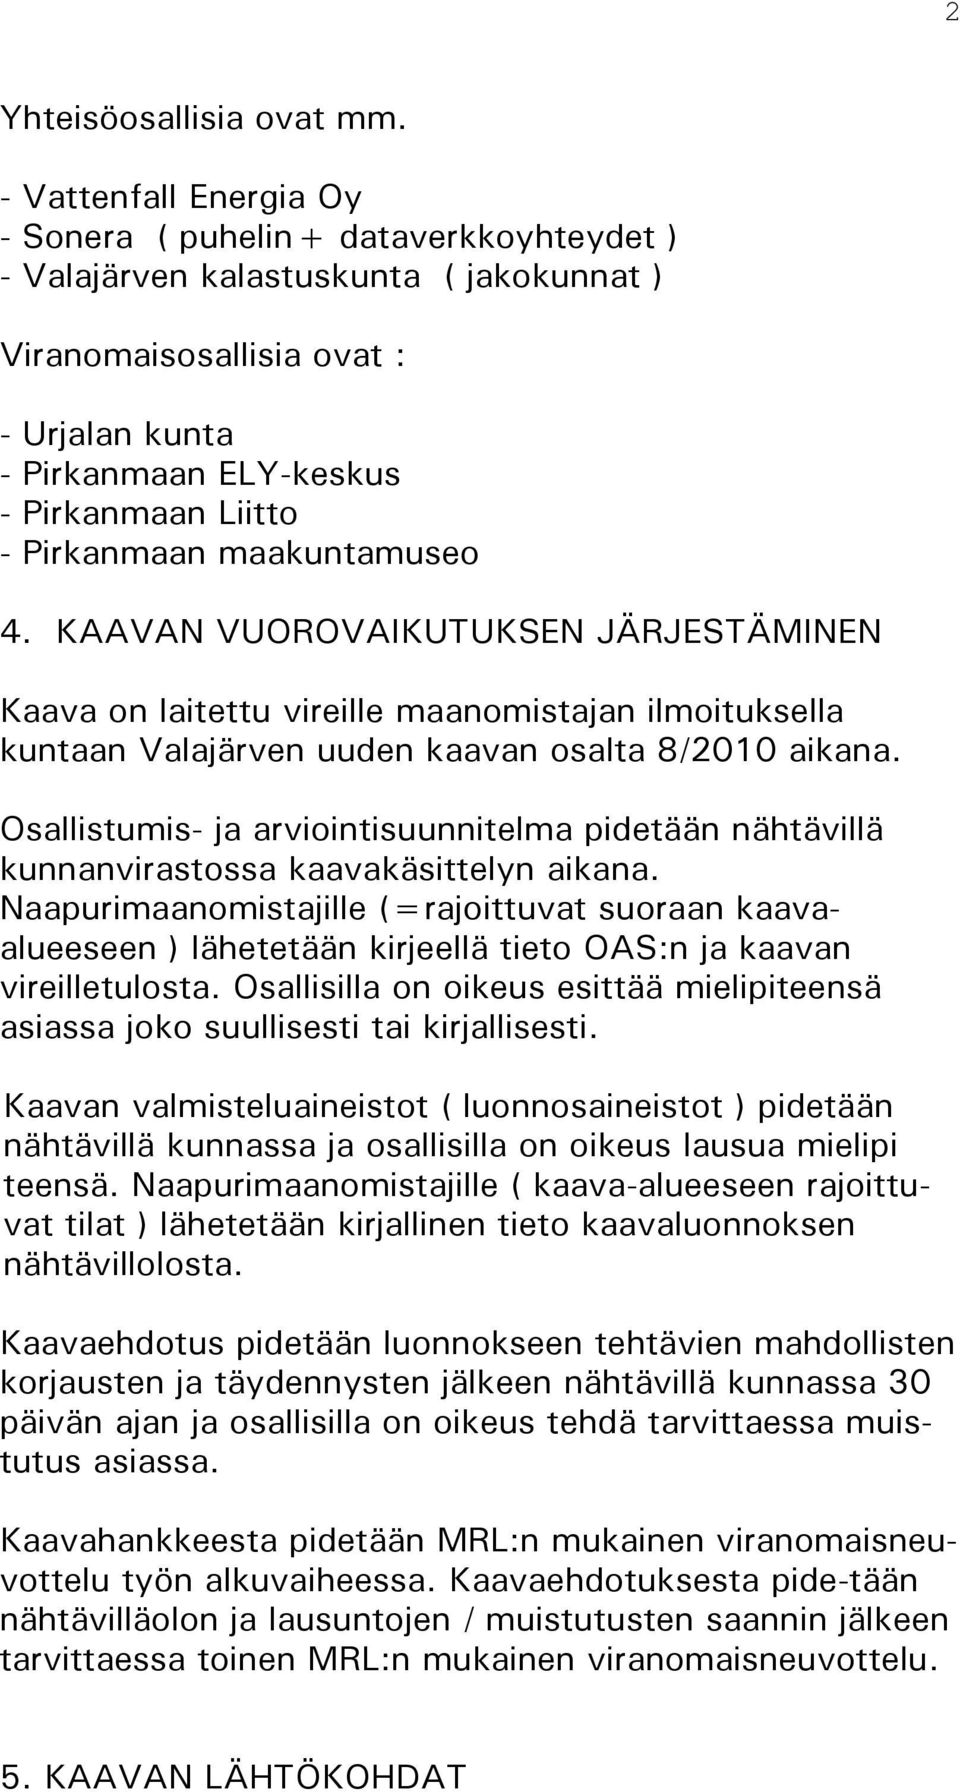 Pirkanmaan maakuntamuseo 4. KAAVAN VUOROVAIKUTUKSEN JÄRJESTÄMINEN Kaava on laitettu vireille maanomiajan ilmoituksella kuntaan Valajärven uuden kaavan osalta 8/2010 aikana.